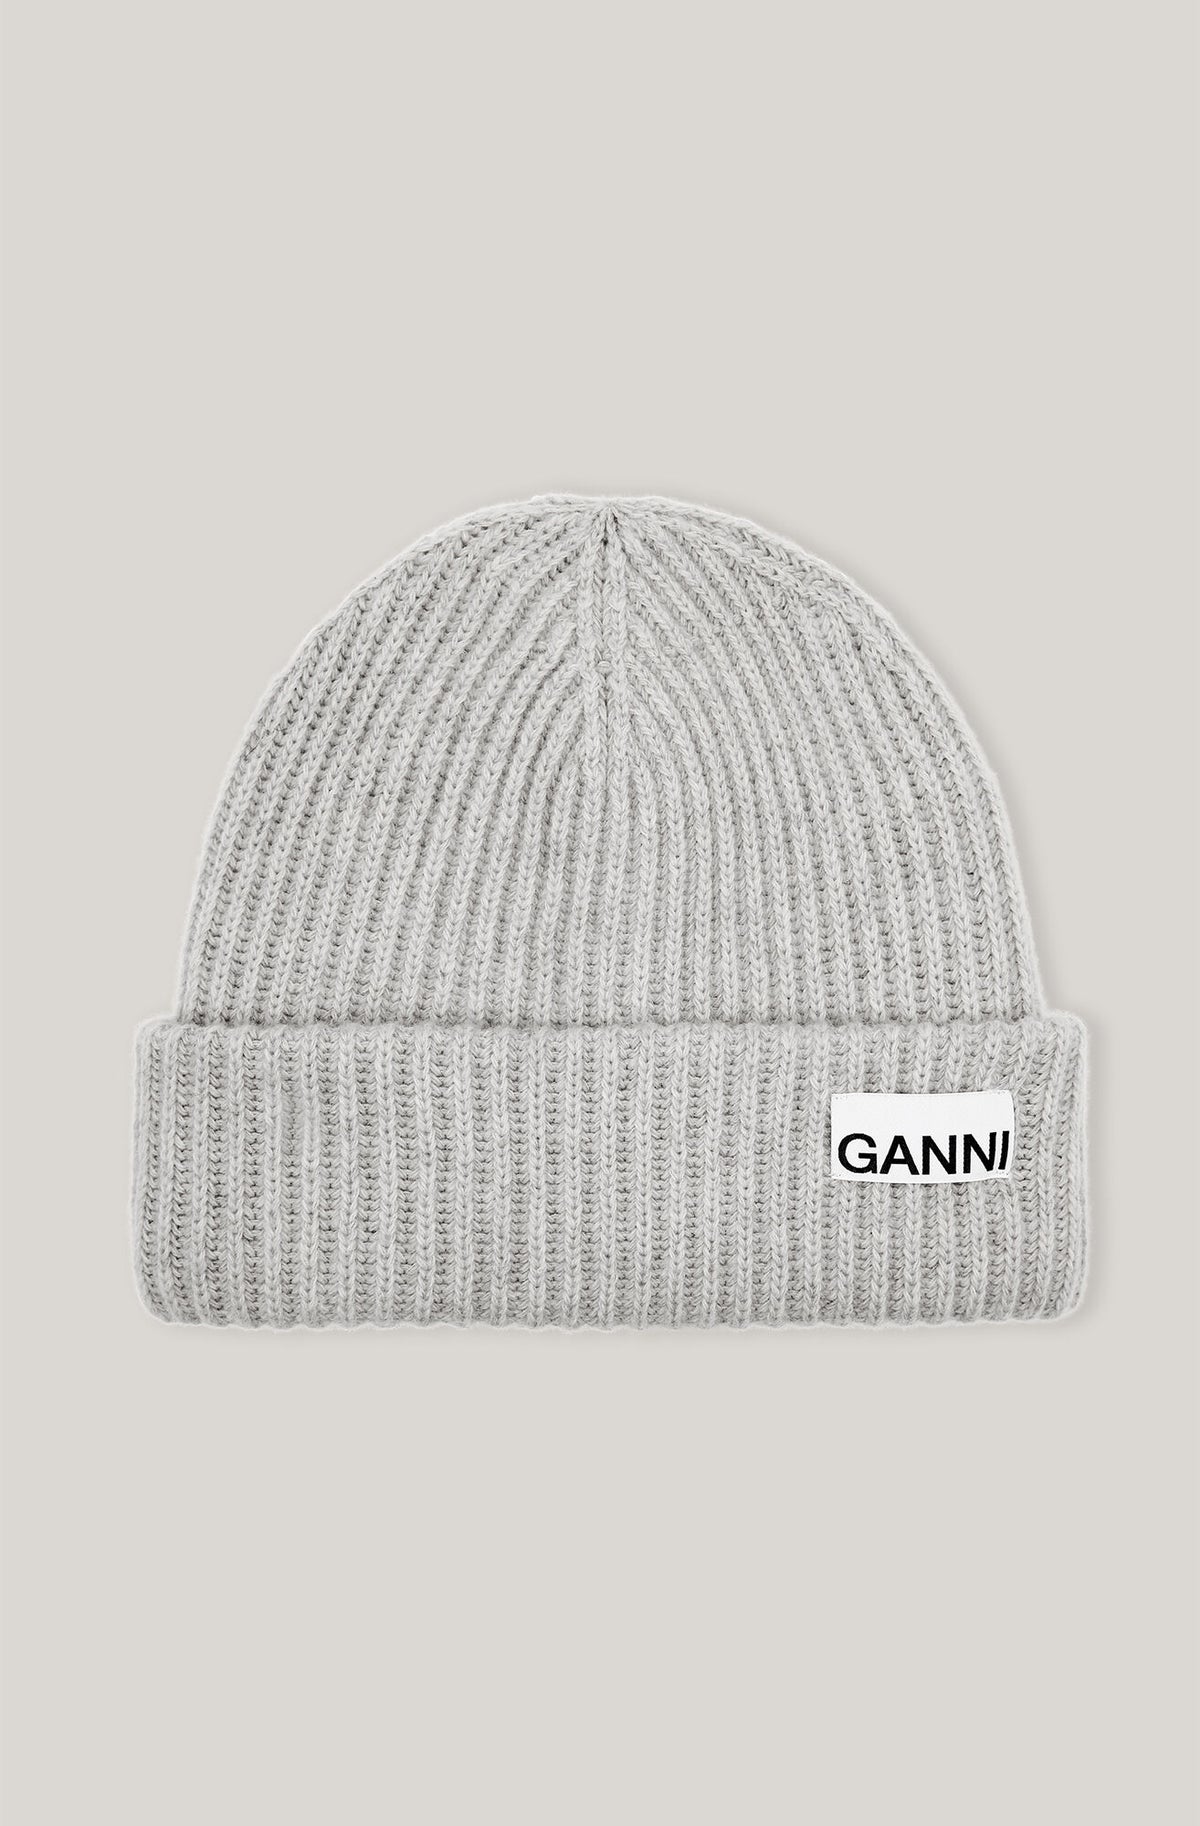 Ganni A3536 grey wool beanie hat